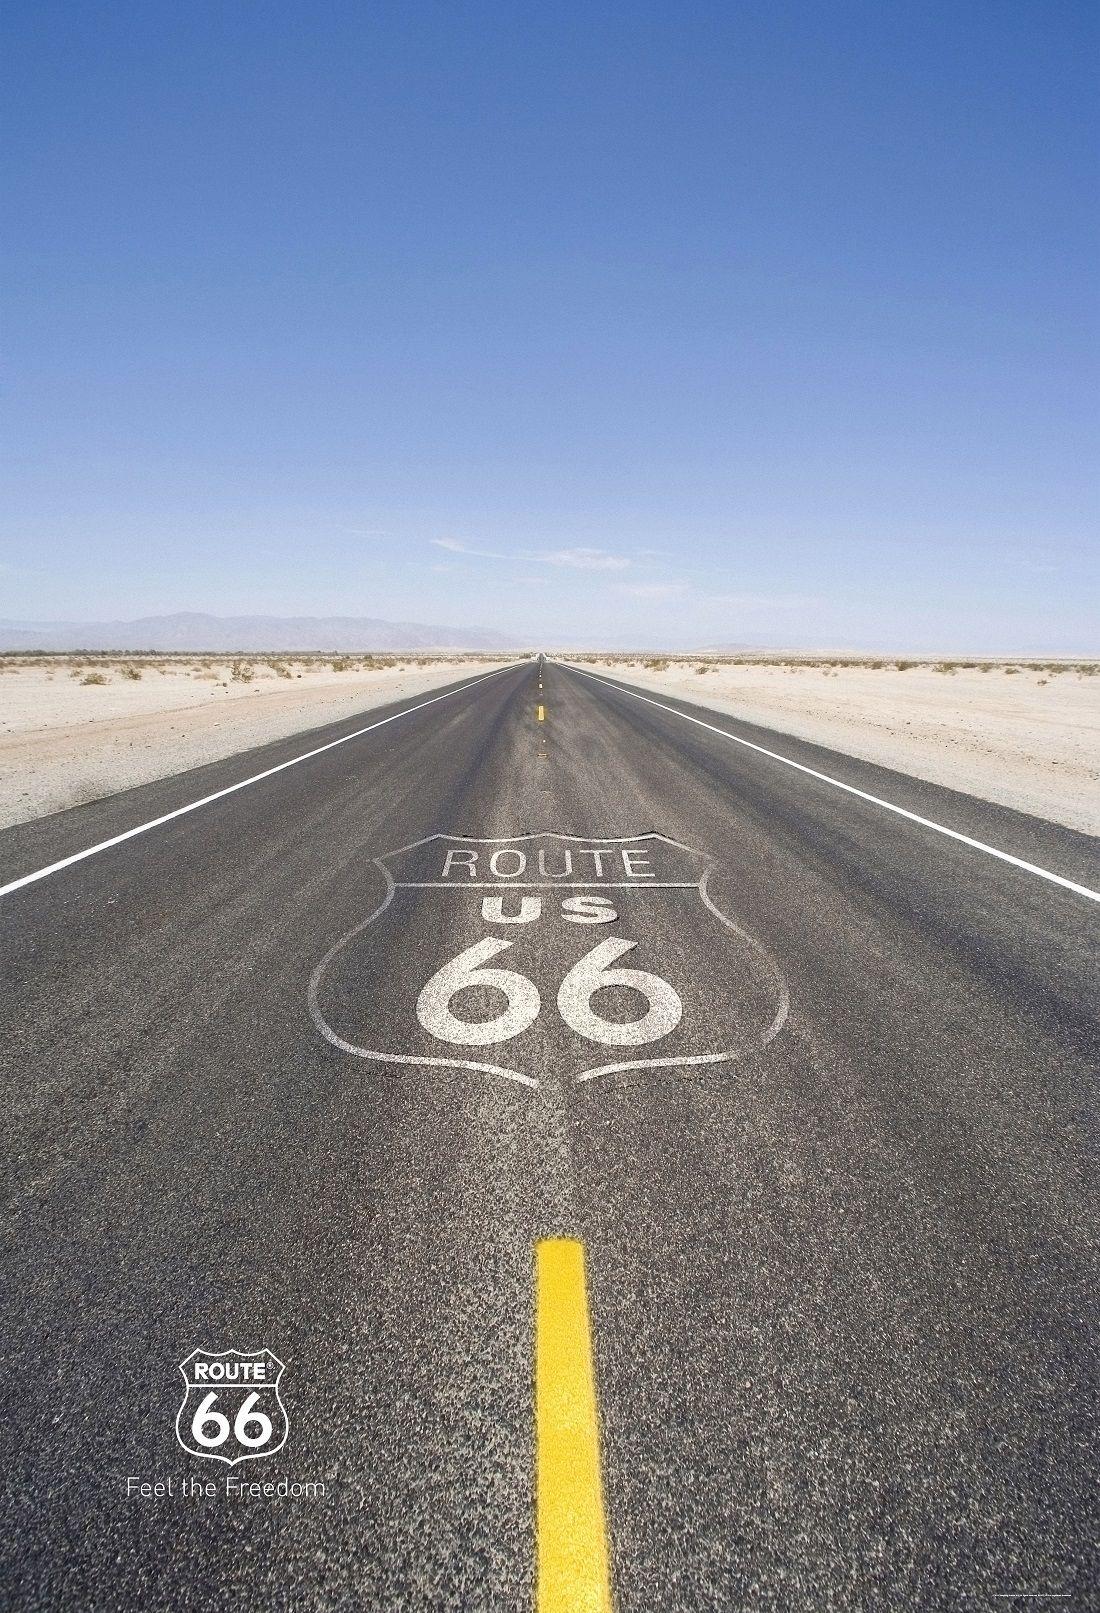 Wallpaper: Route 66 Wallpaper. Route 66 Wallpaper